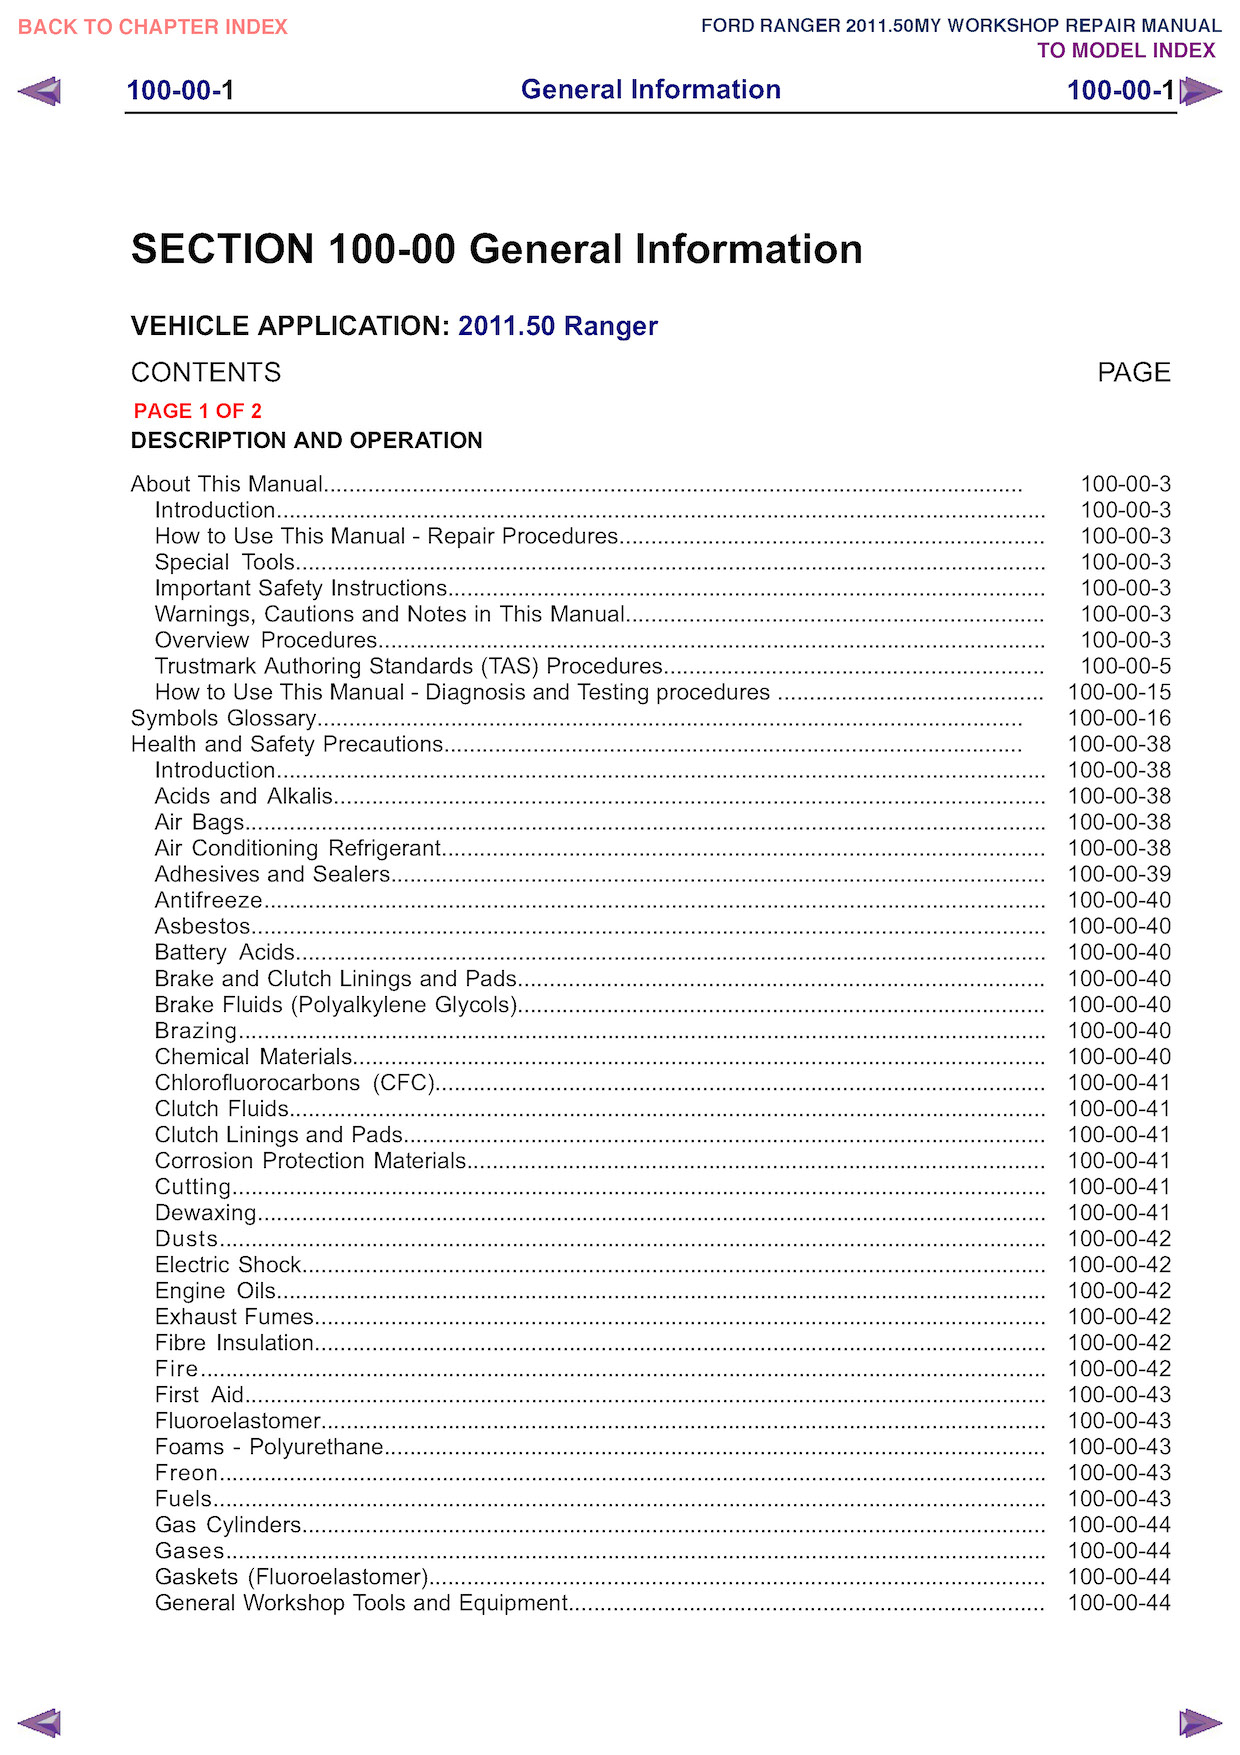 Download 2011 Ford Ranger Service Repair Manual.